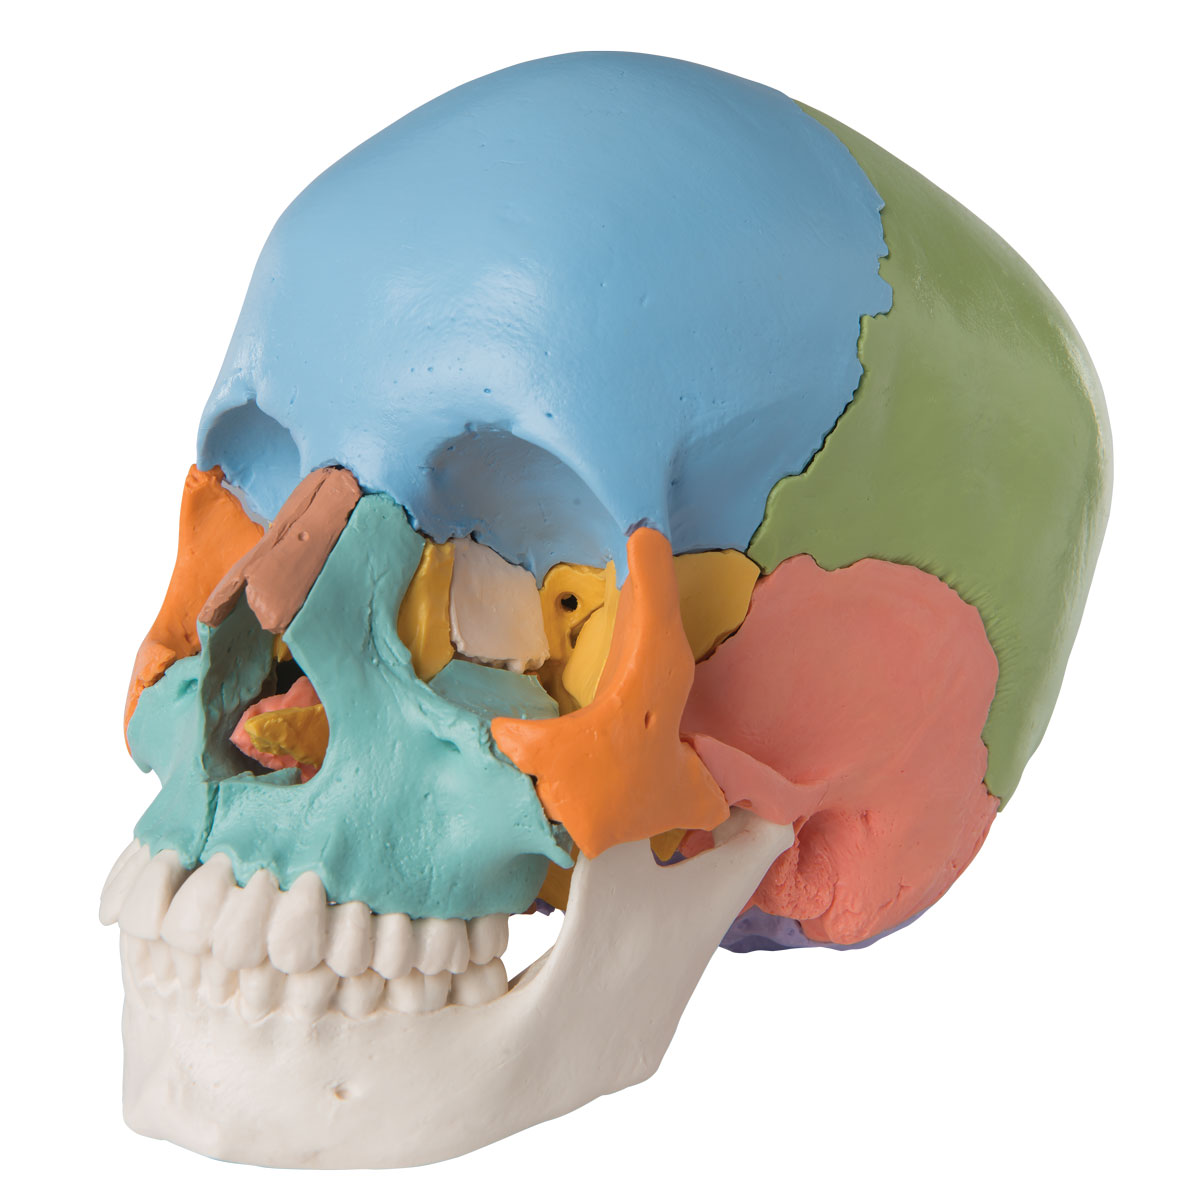 Crâne humain - Sciences naturelles - Pensées Montessori